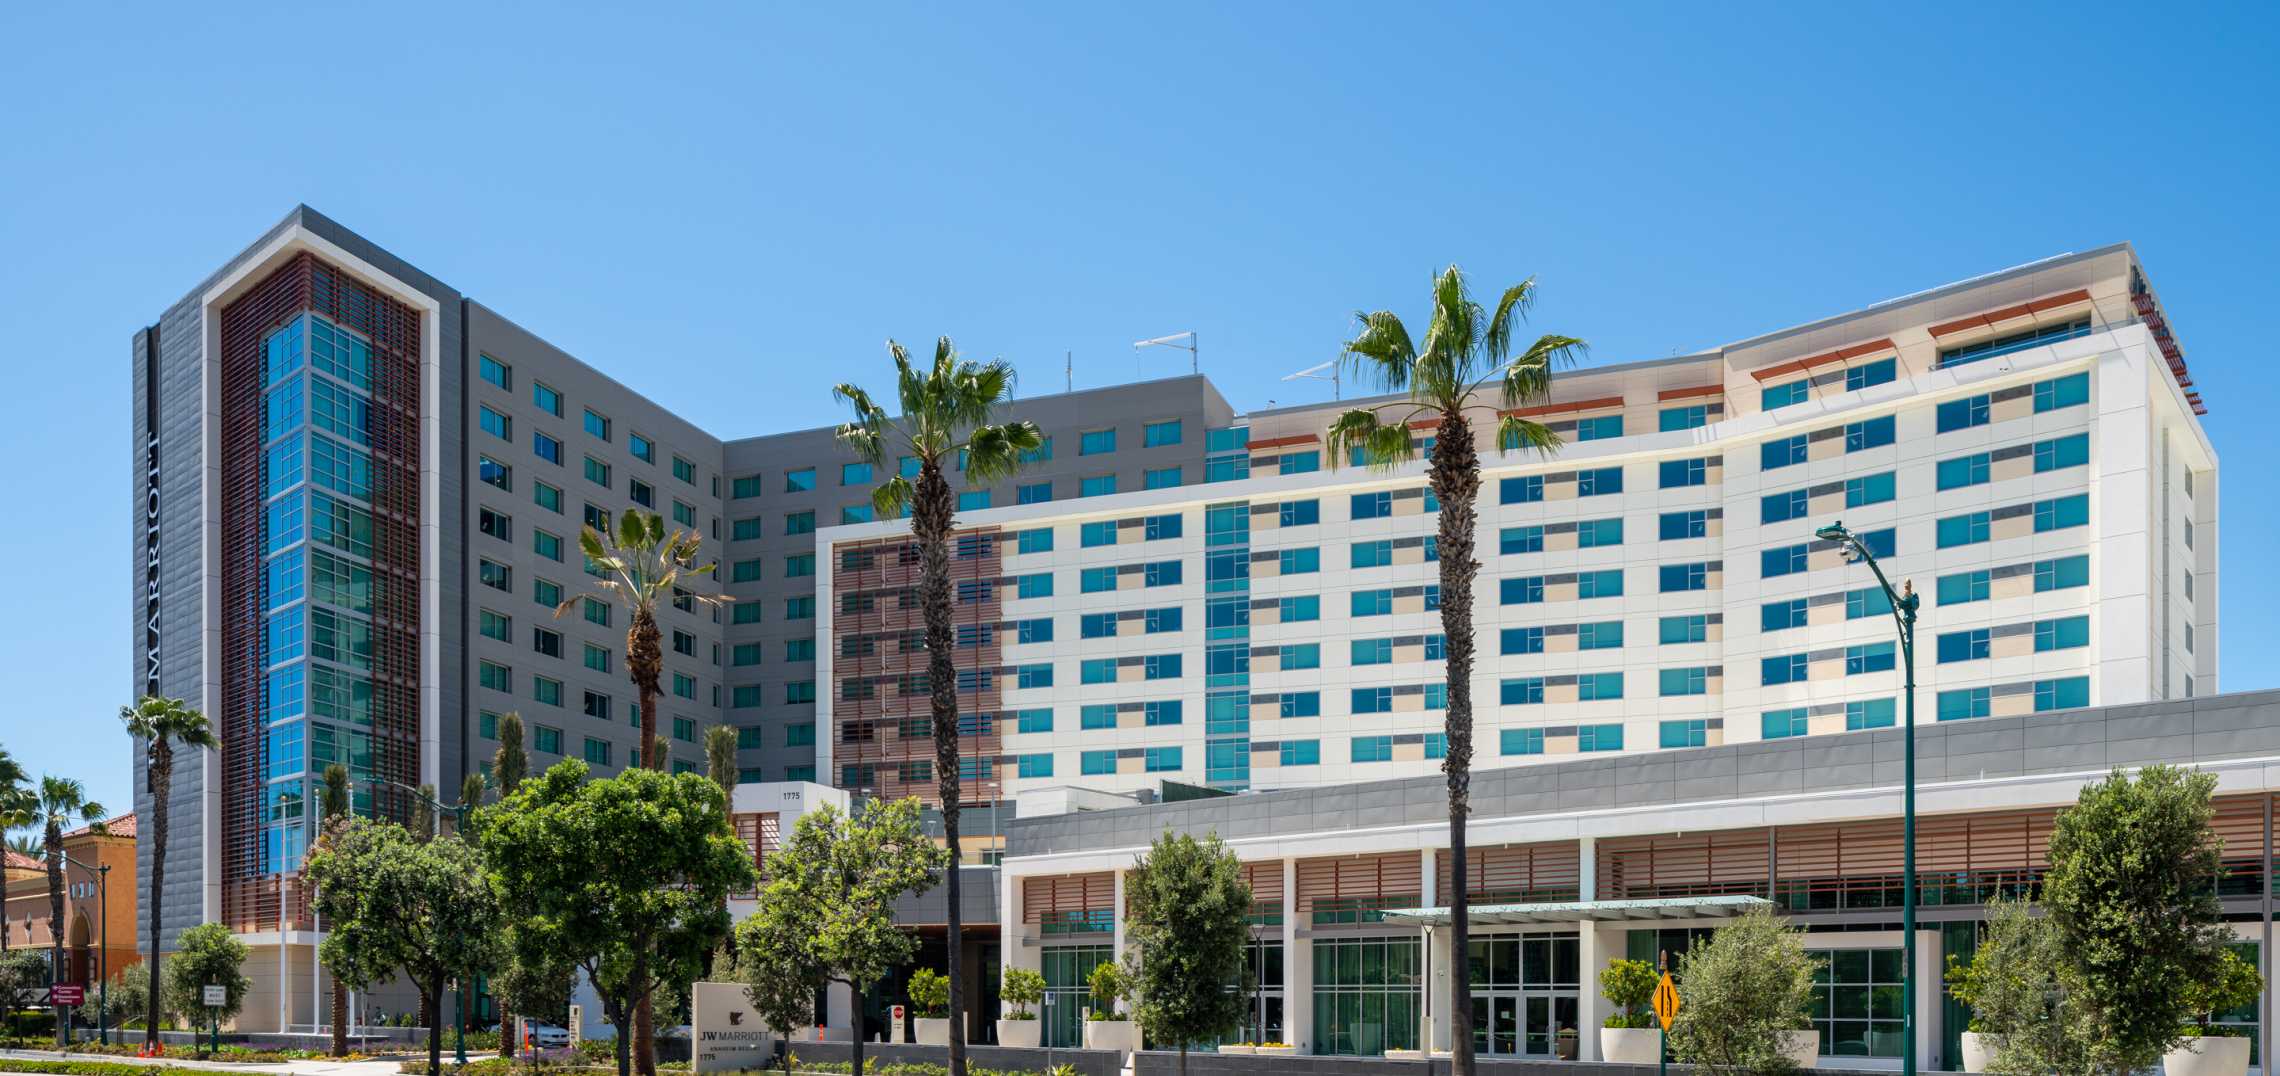 J.W. Marriott Anaheim Resort District Urbanize LA